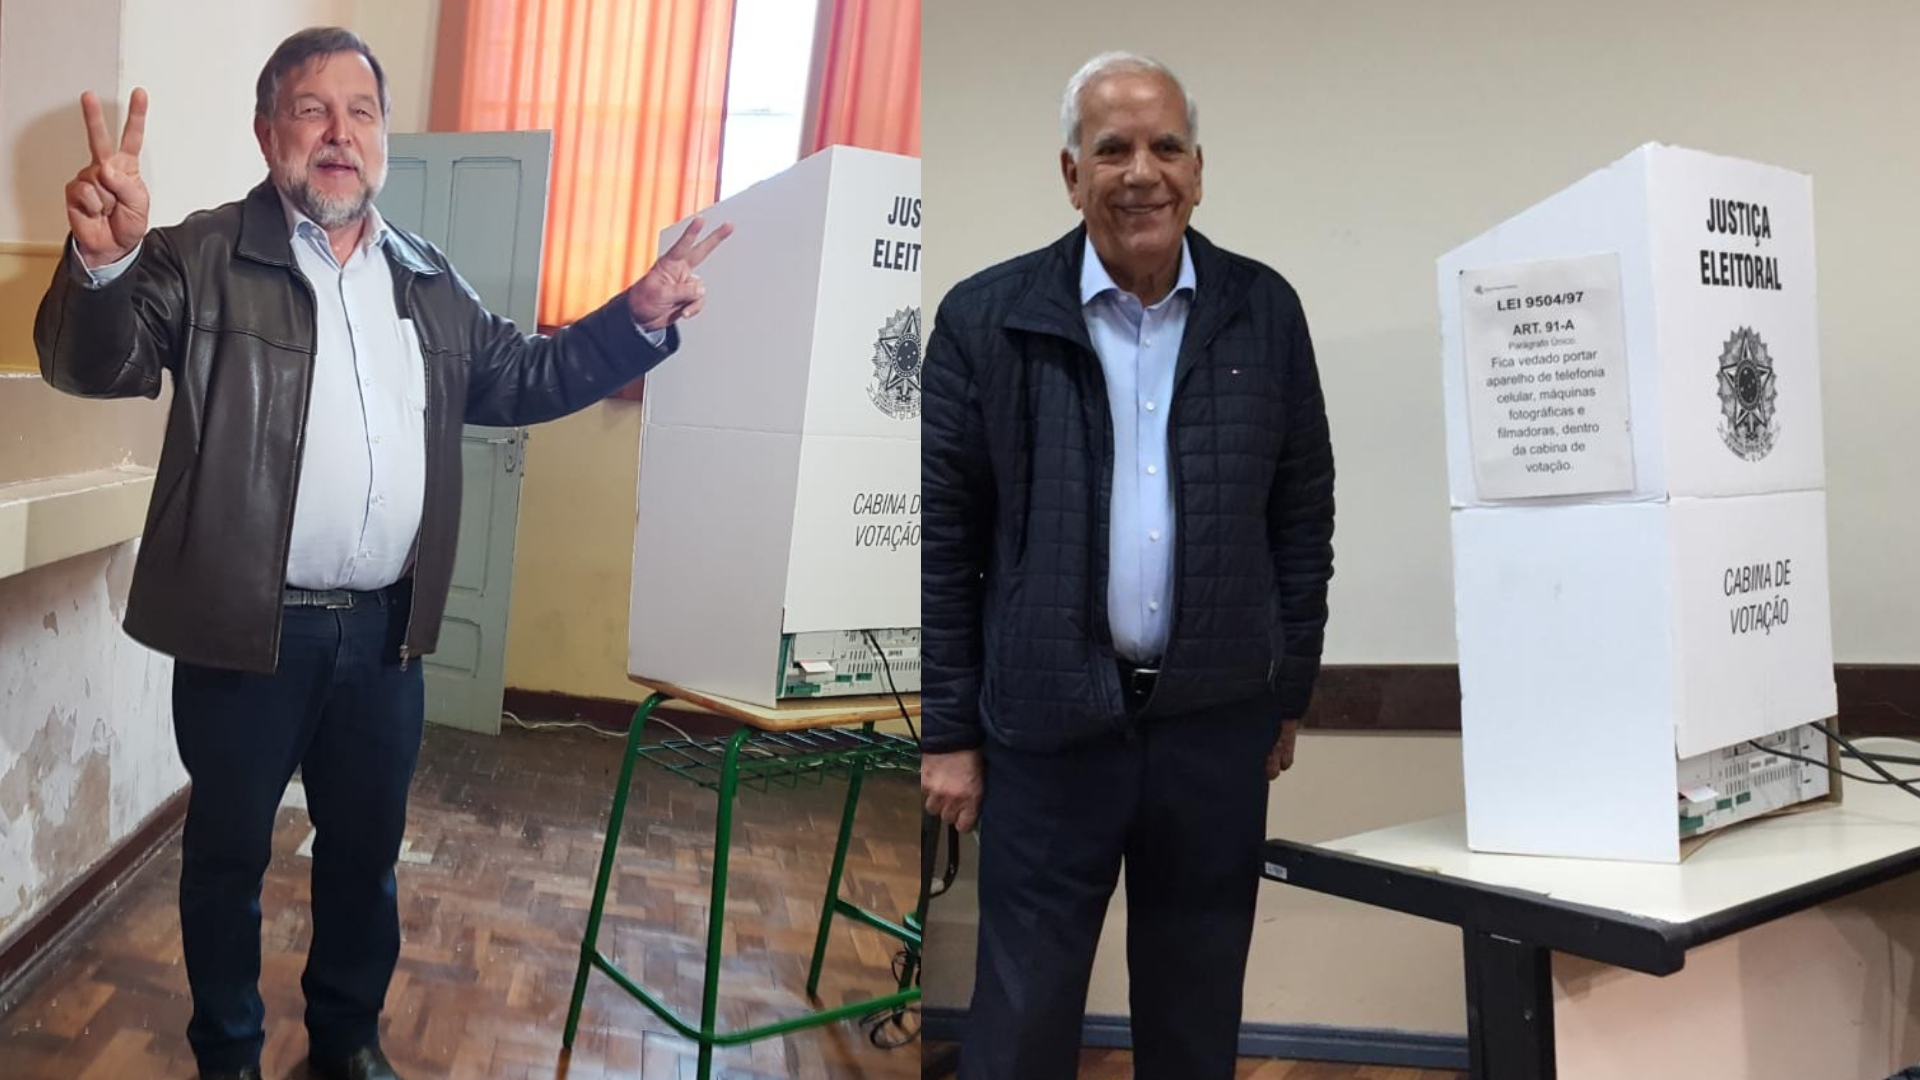  Oriovisto Guimarães e Flávio Arns são eleitos senadores